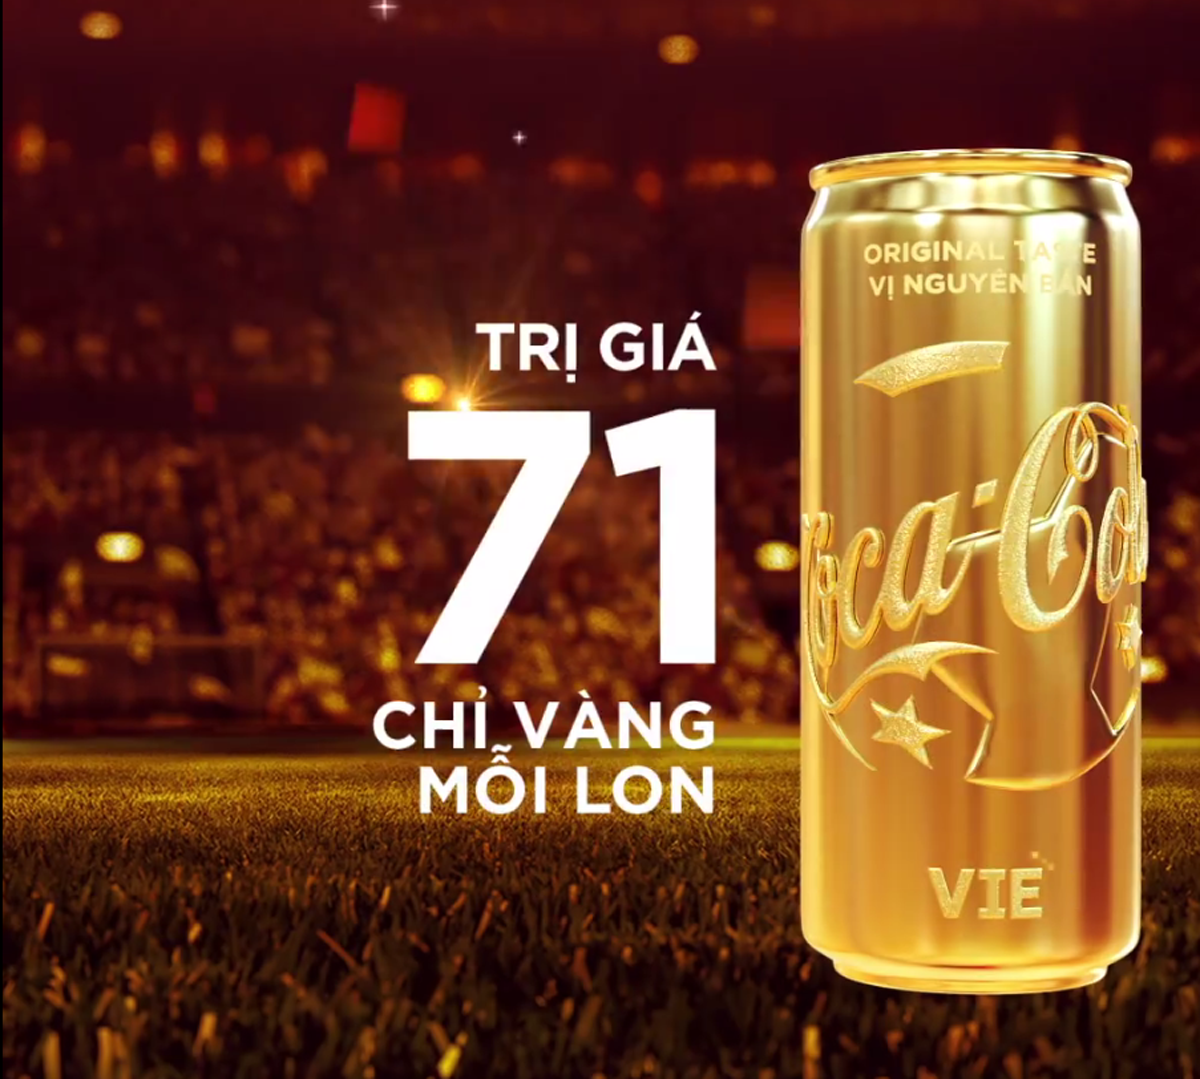 Lon vàng tương đương 71 chỉ vàng nhằm cổ vũ tinh thần cho đội tuyển bóng đá Việt Nam